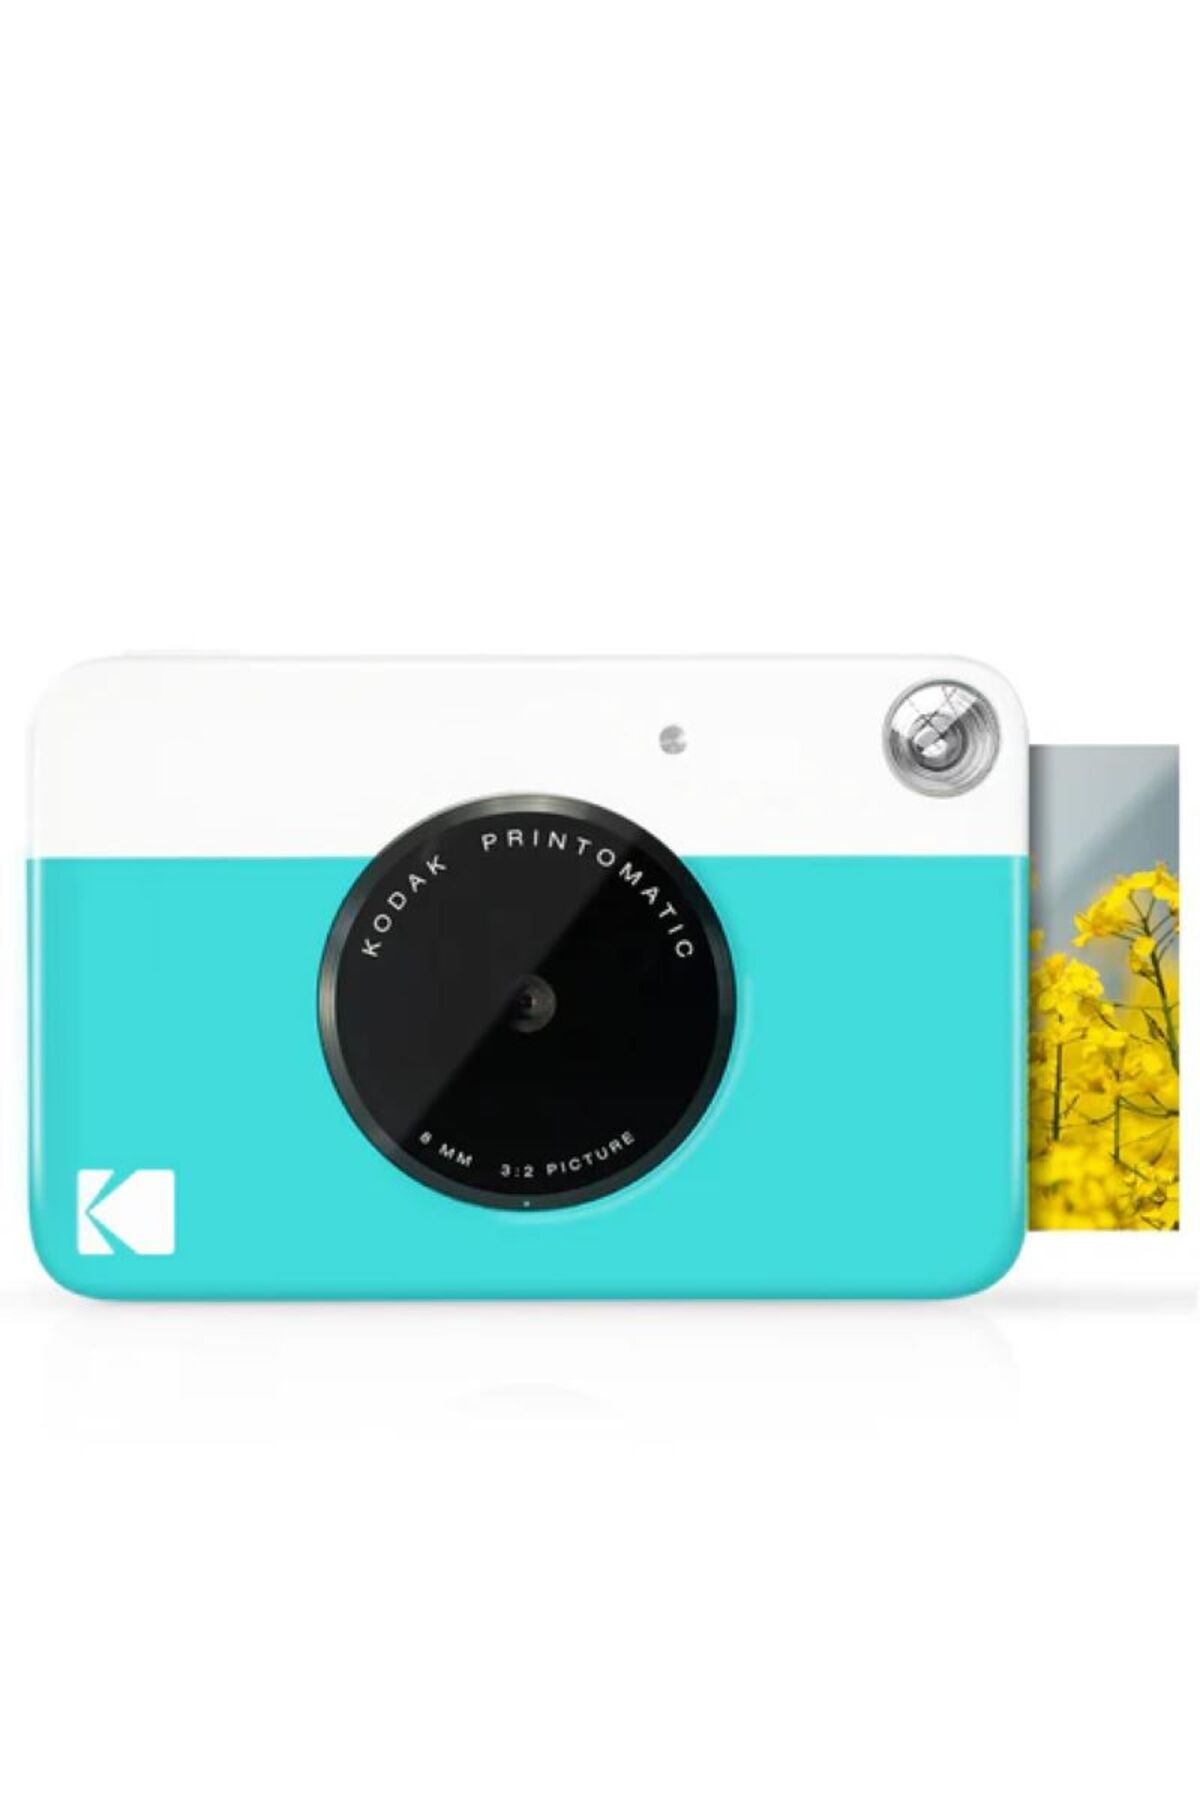 Kodak Printomatic Anında Baskı Kamerası - Bas, Yakala ve Paylaş